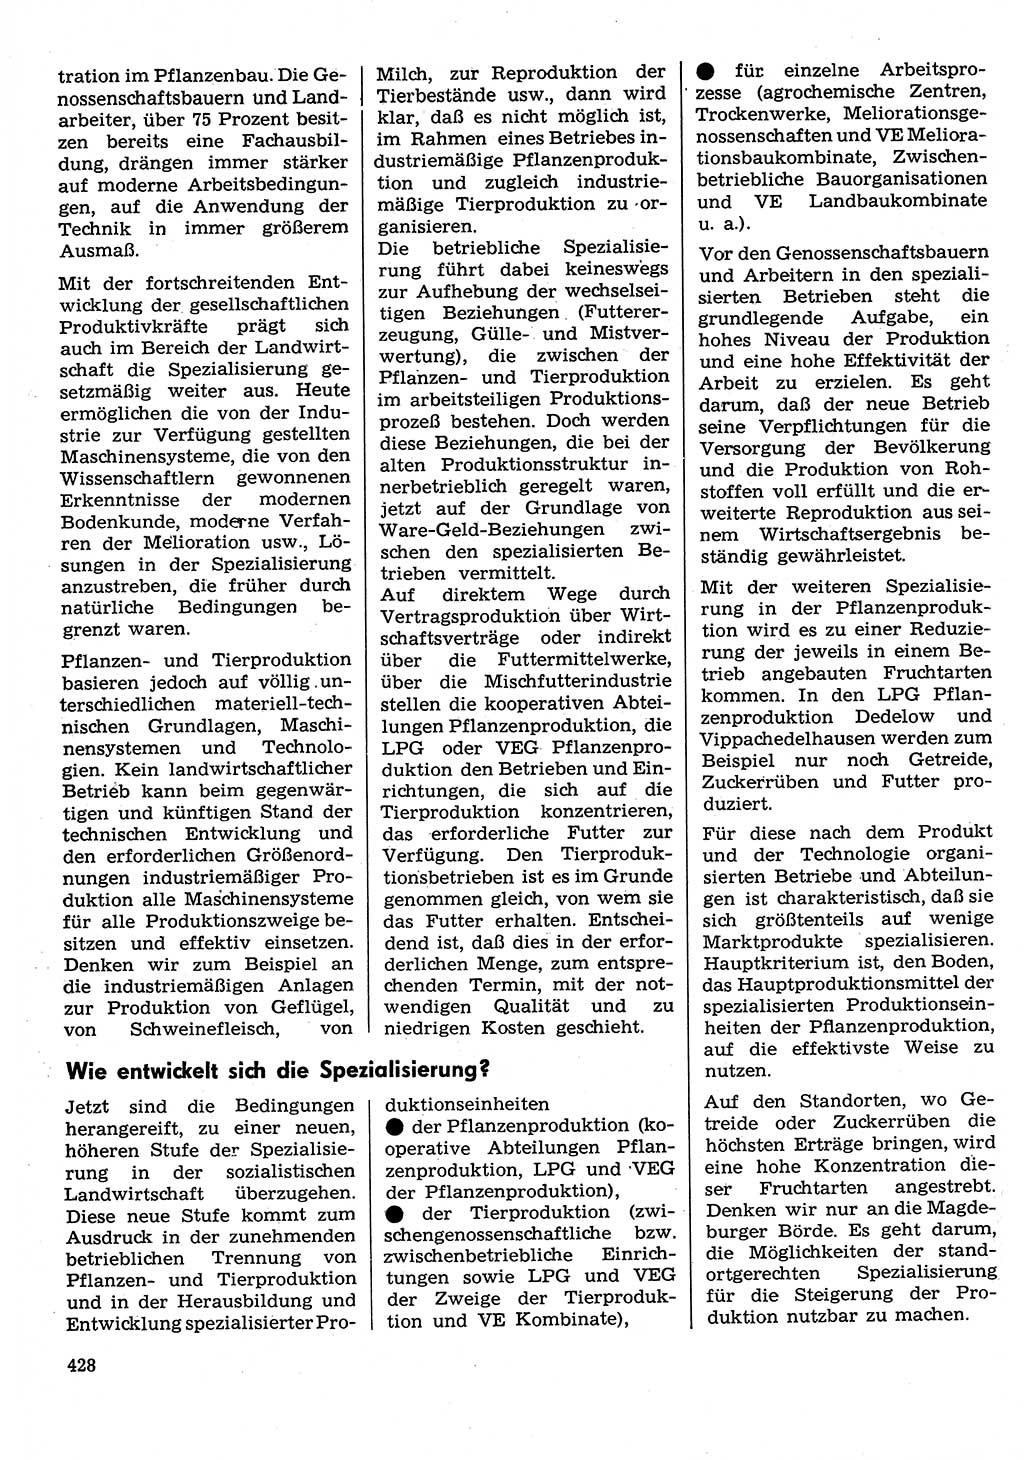 Neuer Weg (NW), Organ des Zentralkomitees (ZK) der SED (Sozialistische Einheitspartei Deutschlands) für Fragen des Parteilebens, 30. Jahrgang [Deutsche Demokratische Republik (DDR)] 1975, Seite 428 (NW ZK SED DDR 1975, S. 428)